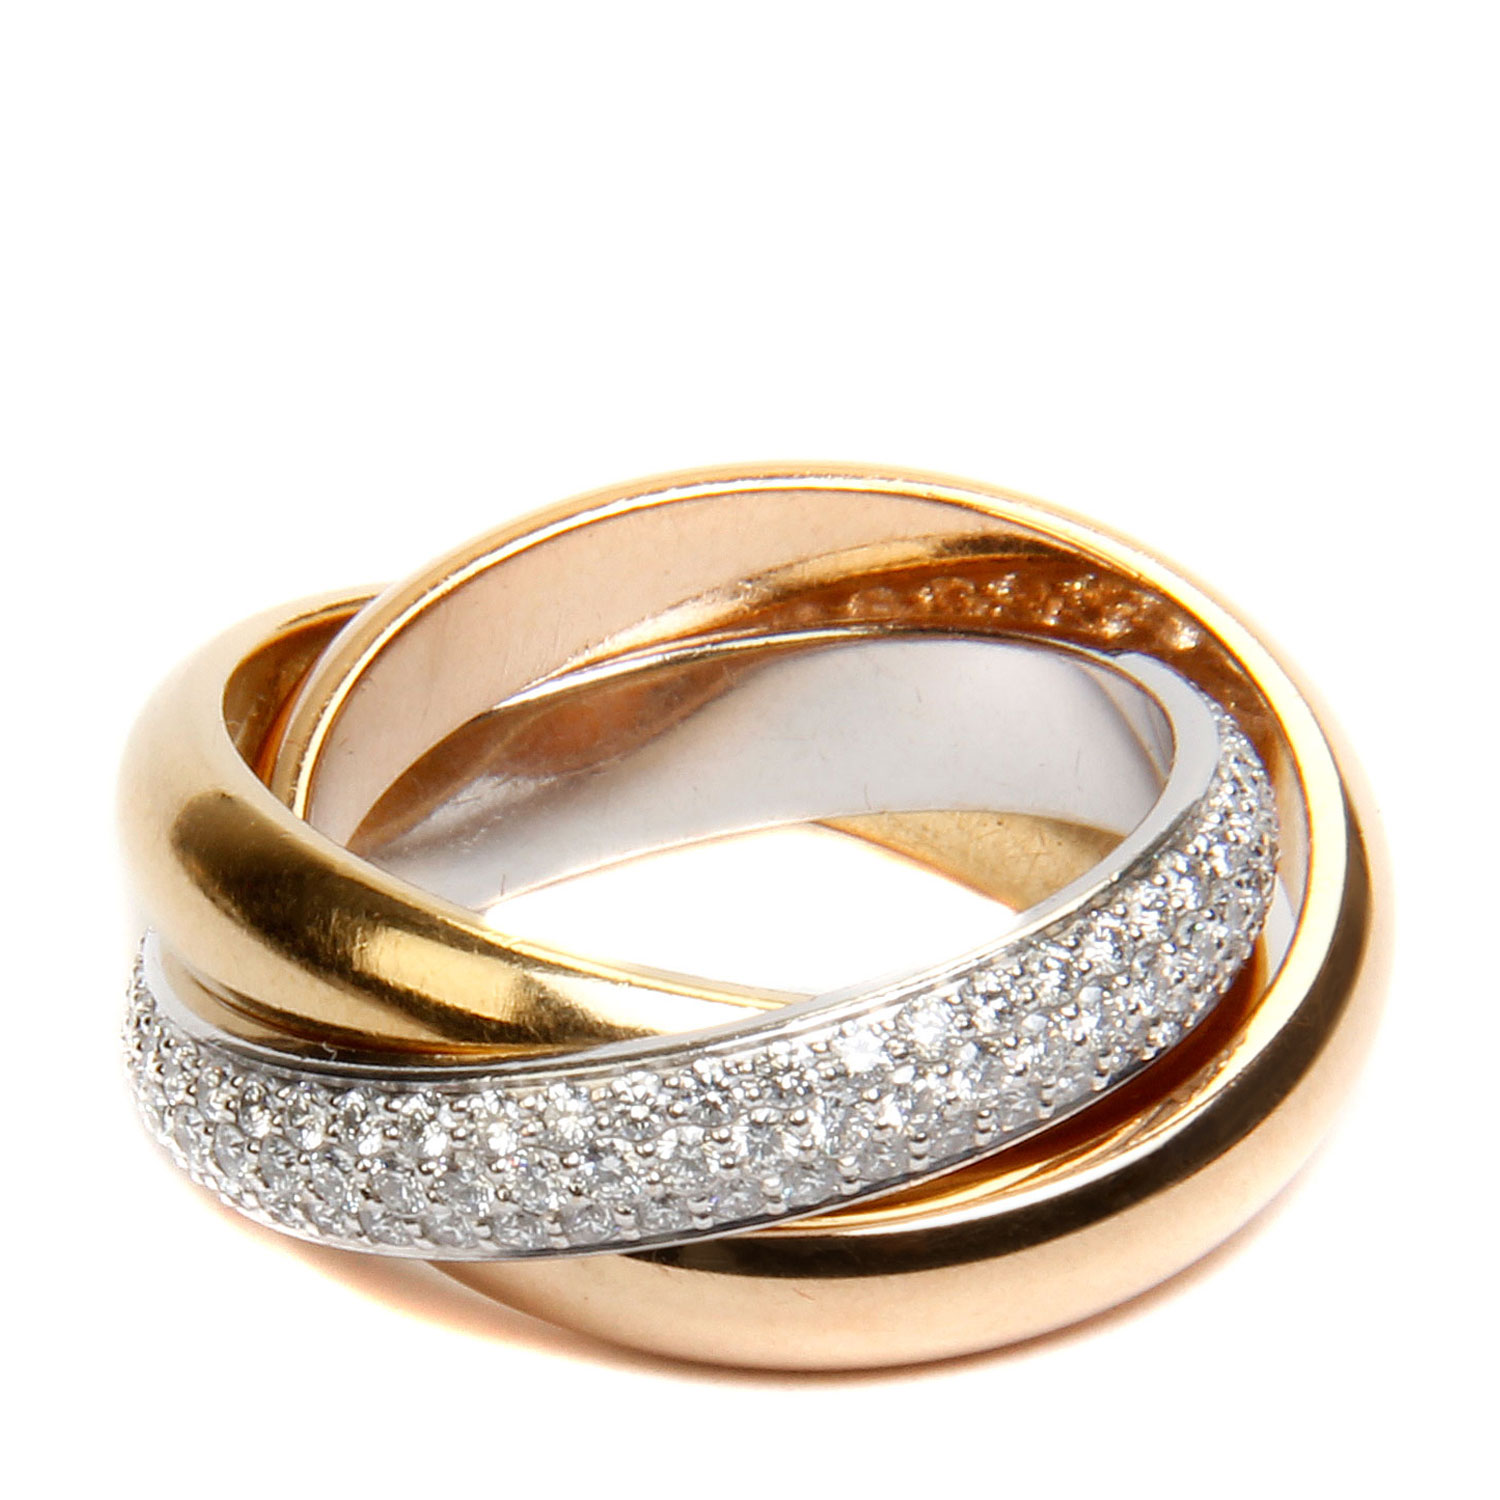 高清图|卡地亚结婚对戒 18K玫瑰金戒指图片1|腕表之家-珠宝